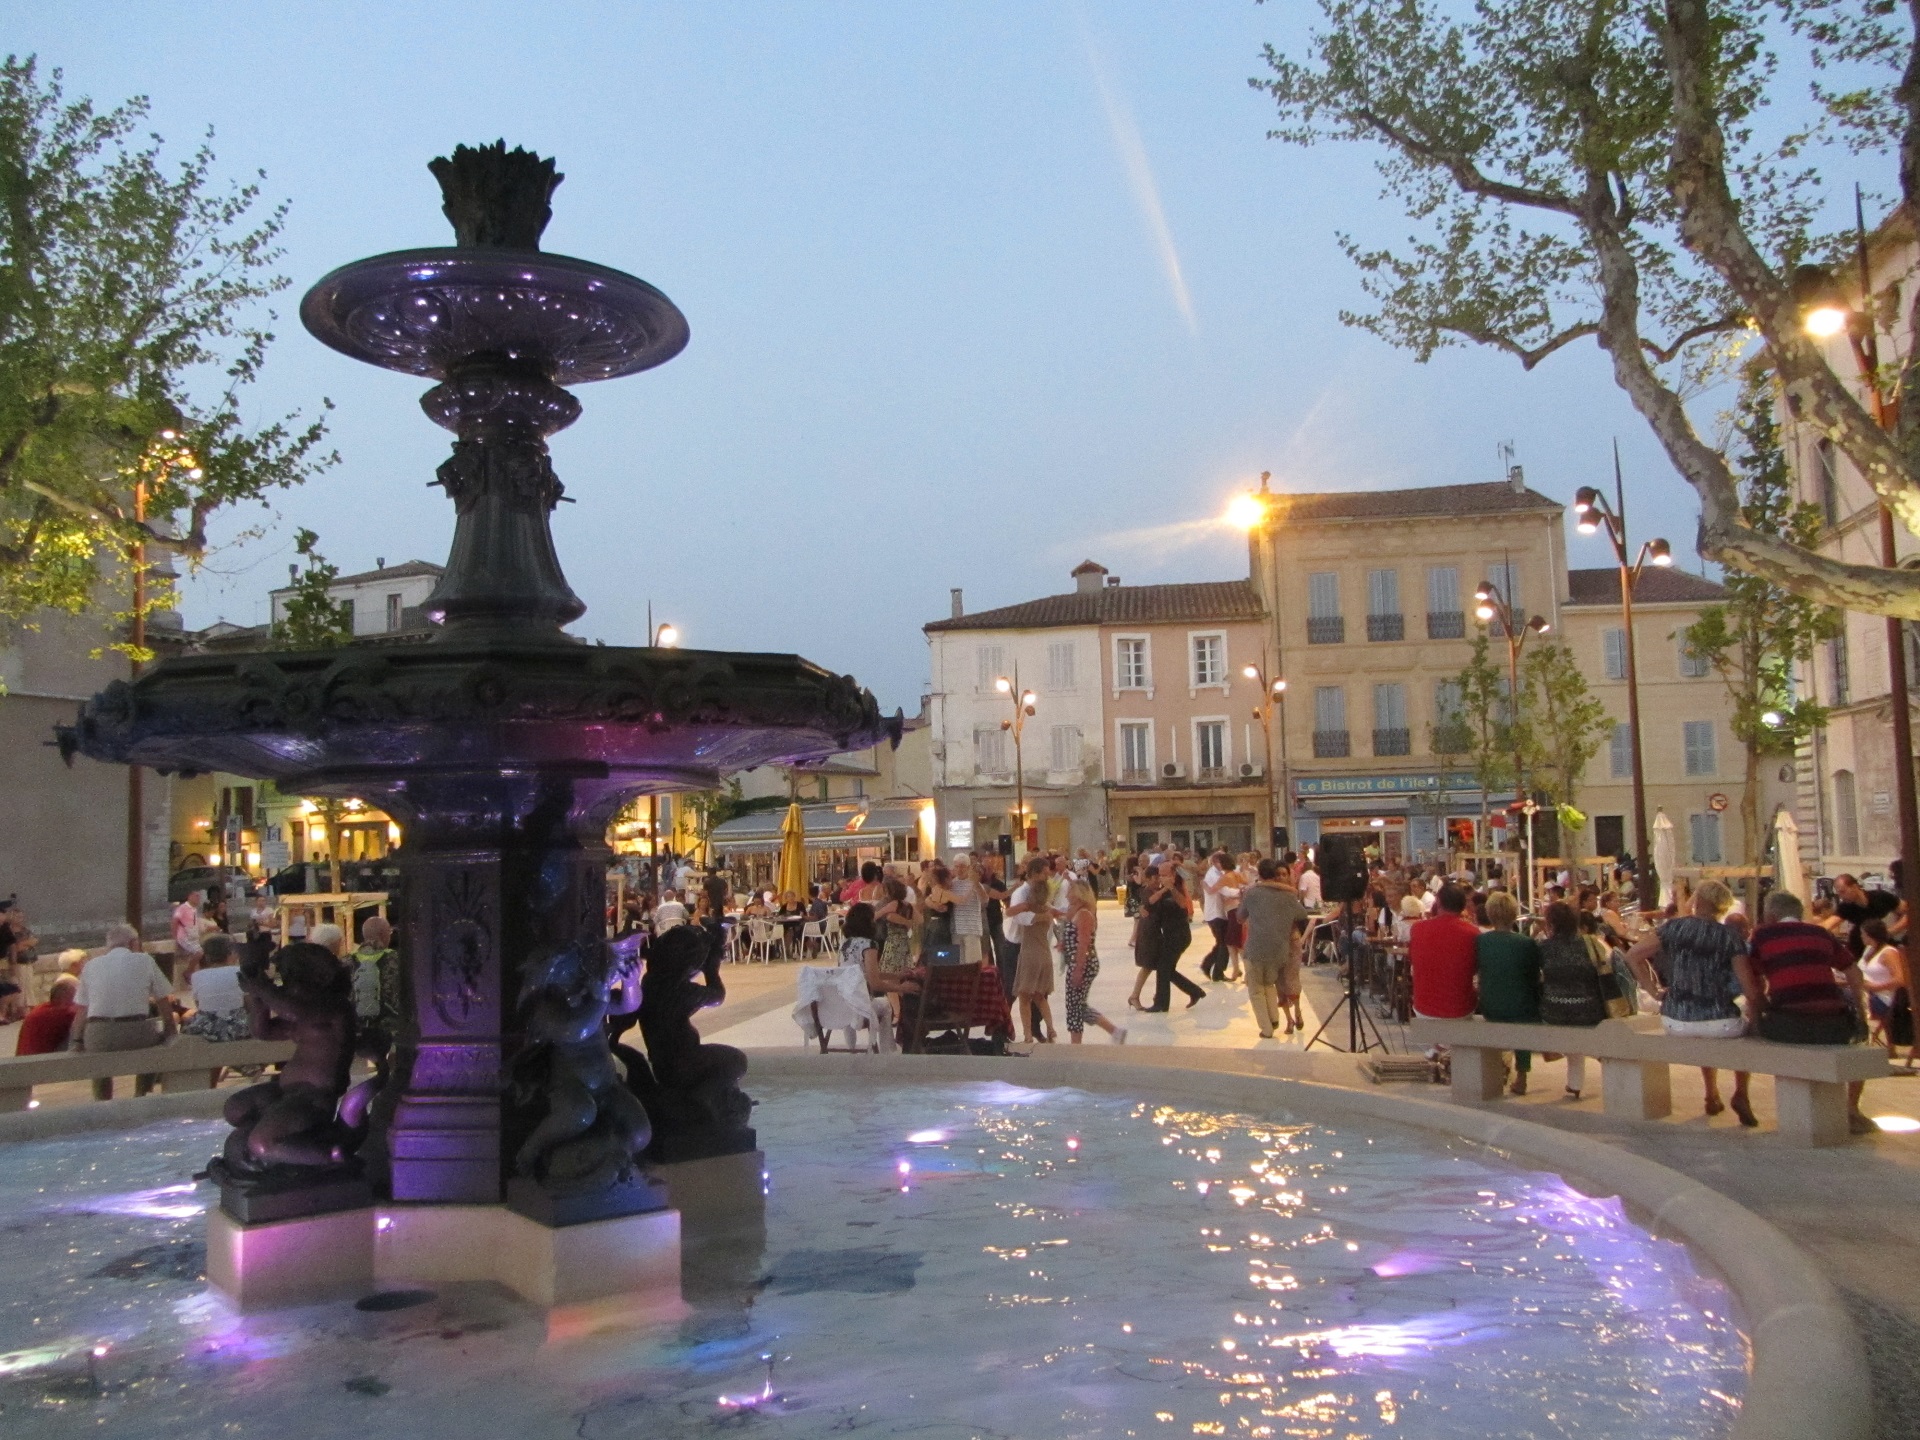 Milonga été - Centre ville de Martigues - Quartier de l'Ile - © Otmartigues / KarimK